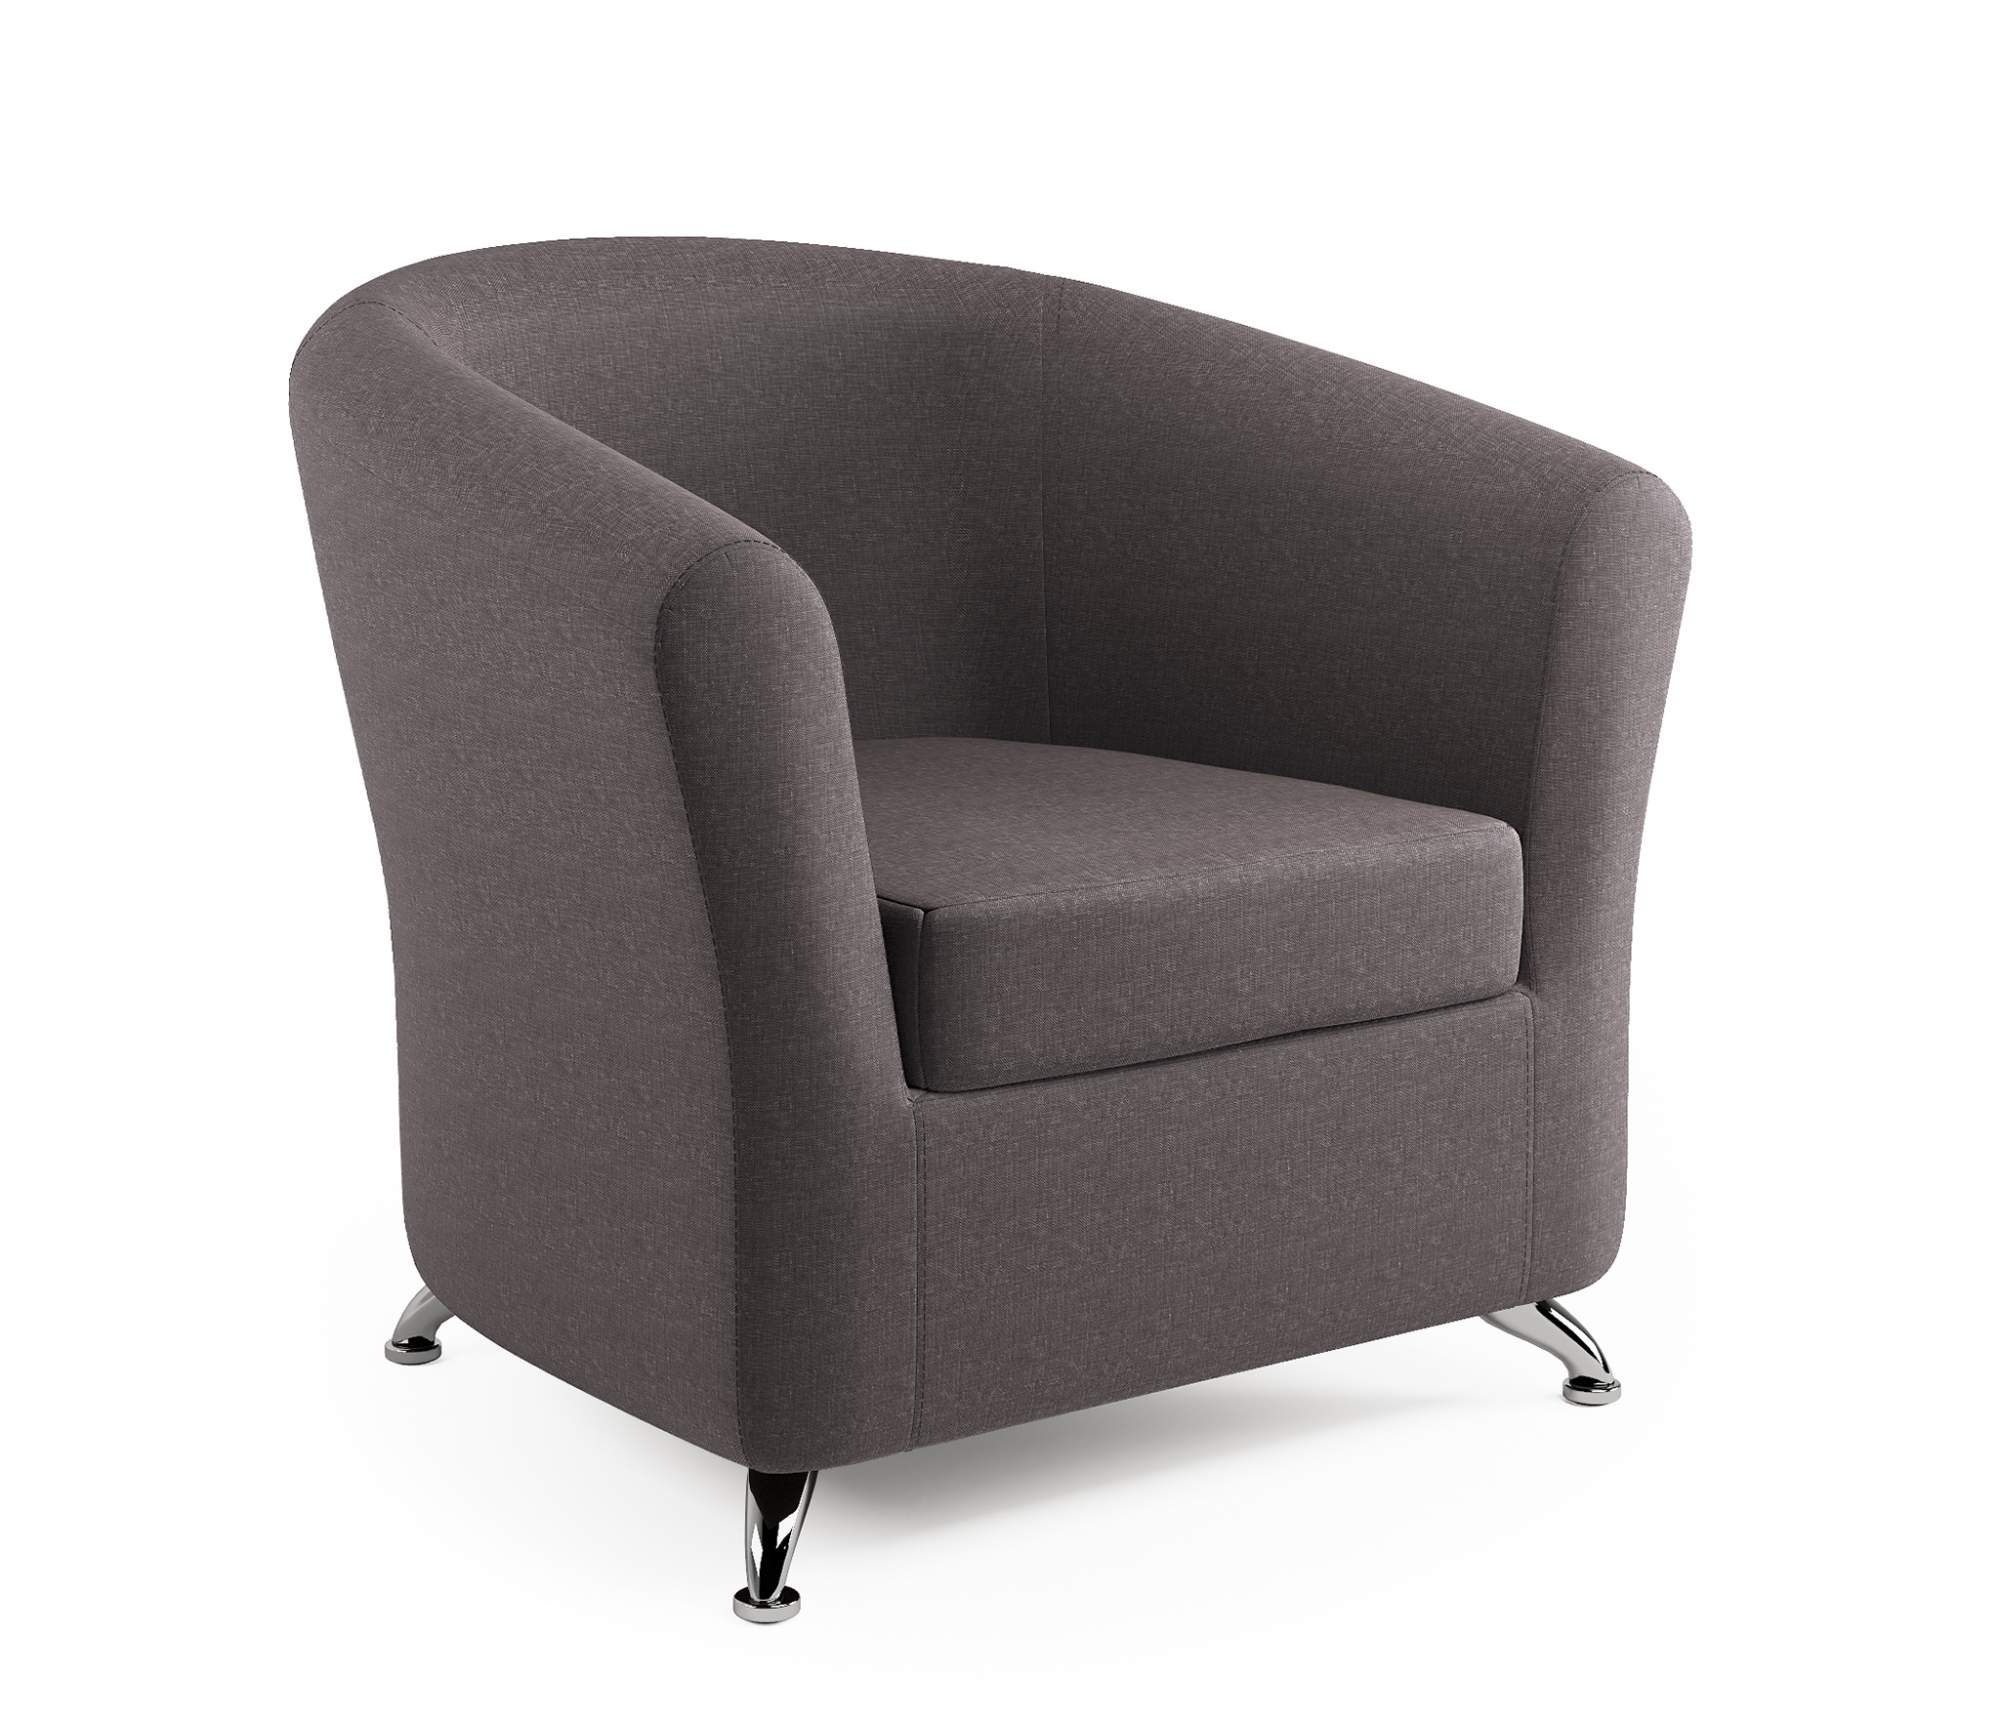 Кресло Шарм-Дизайн Евро рогожка латте